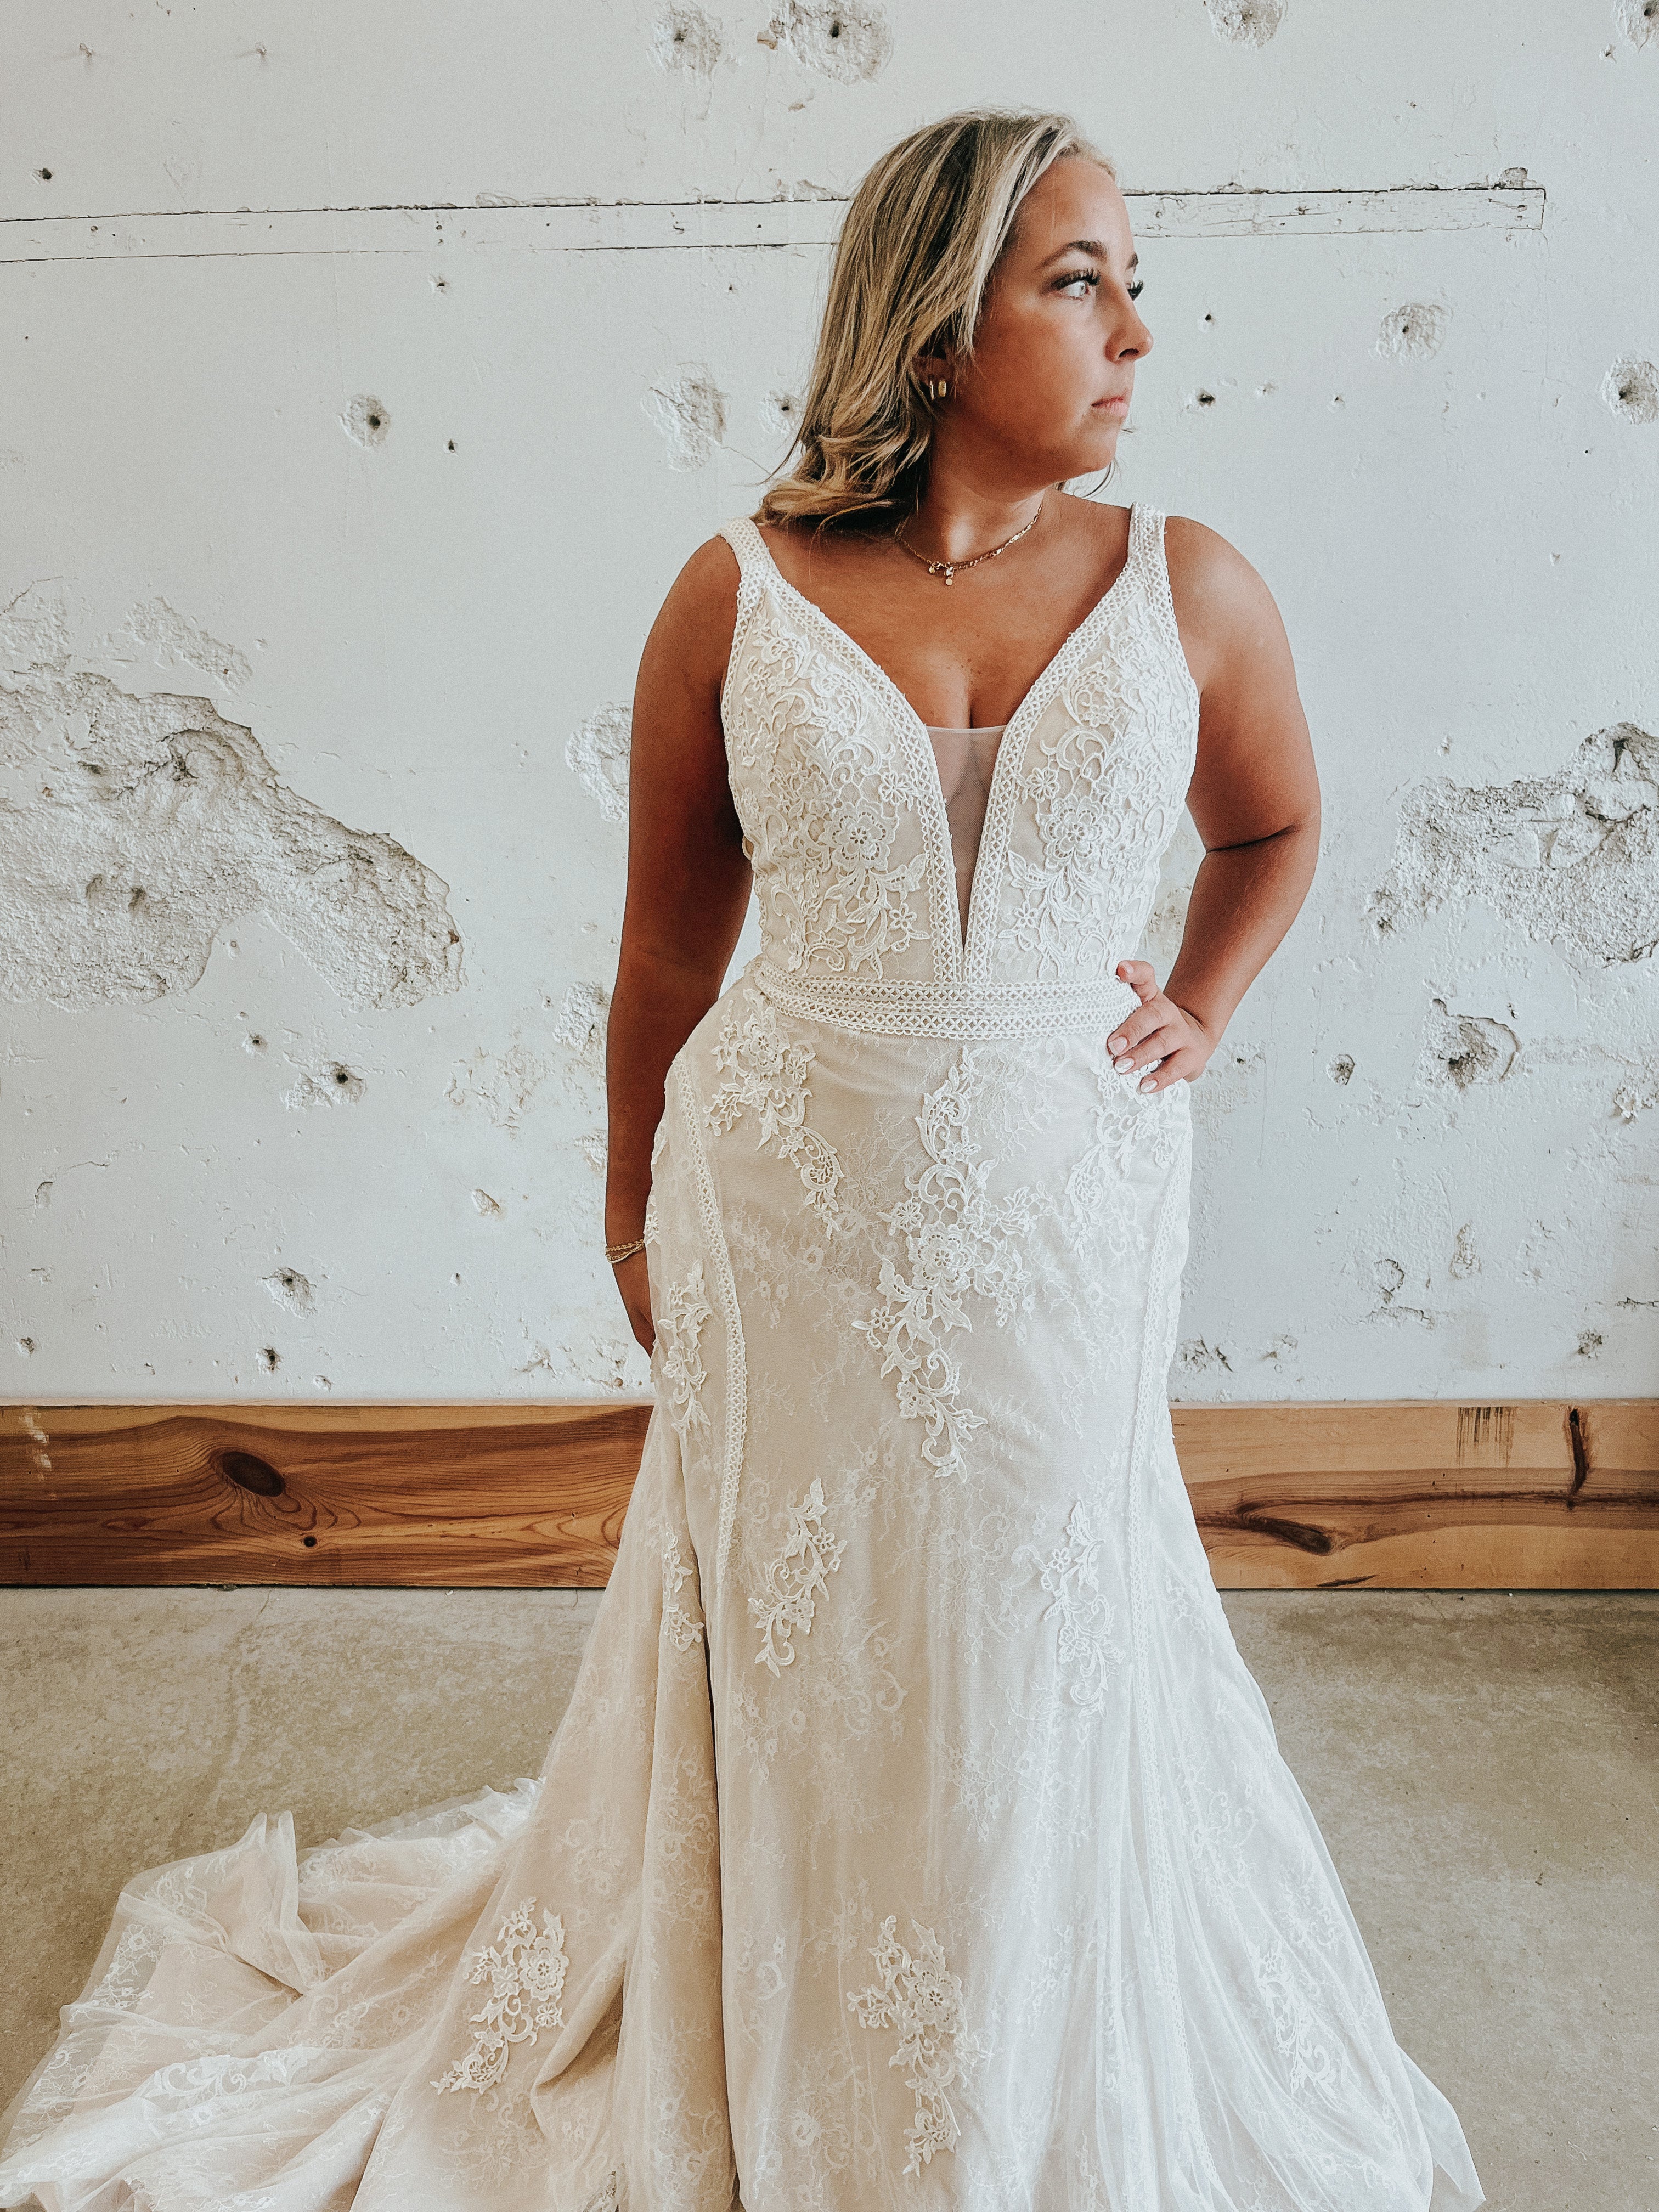 size 16 wedding dress